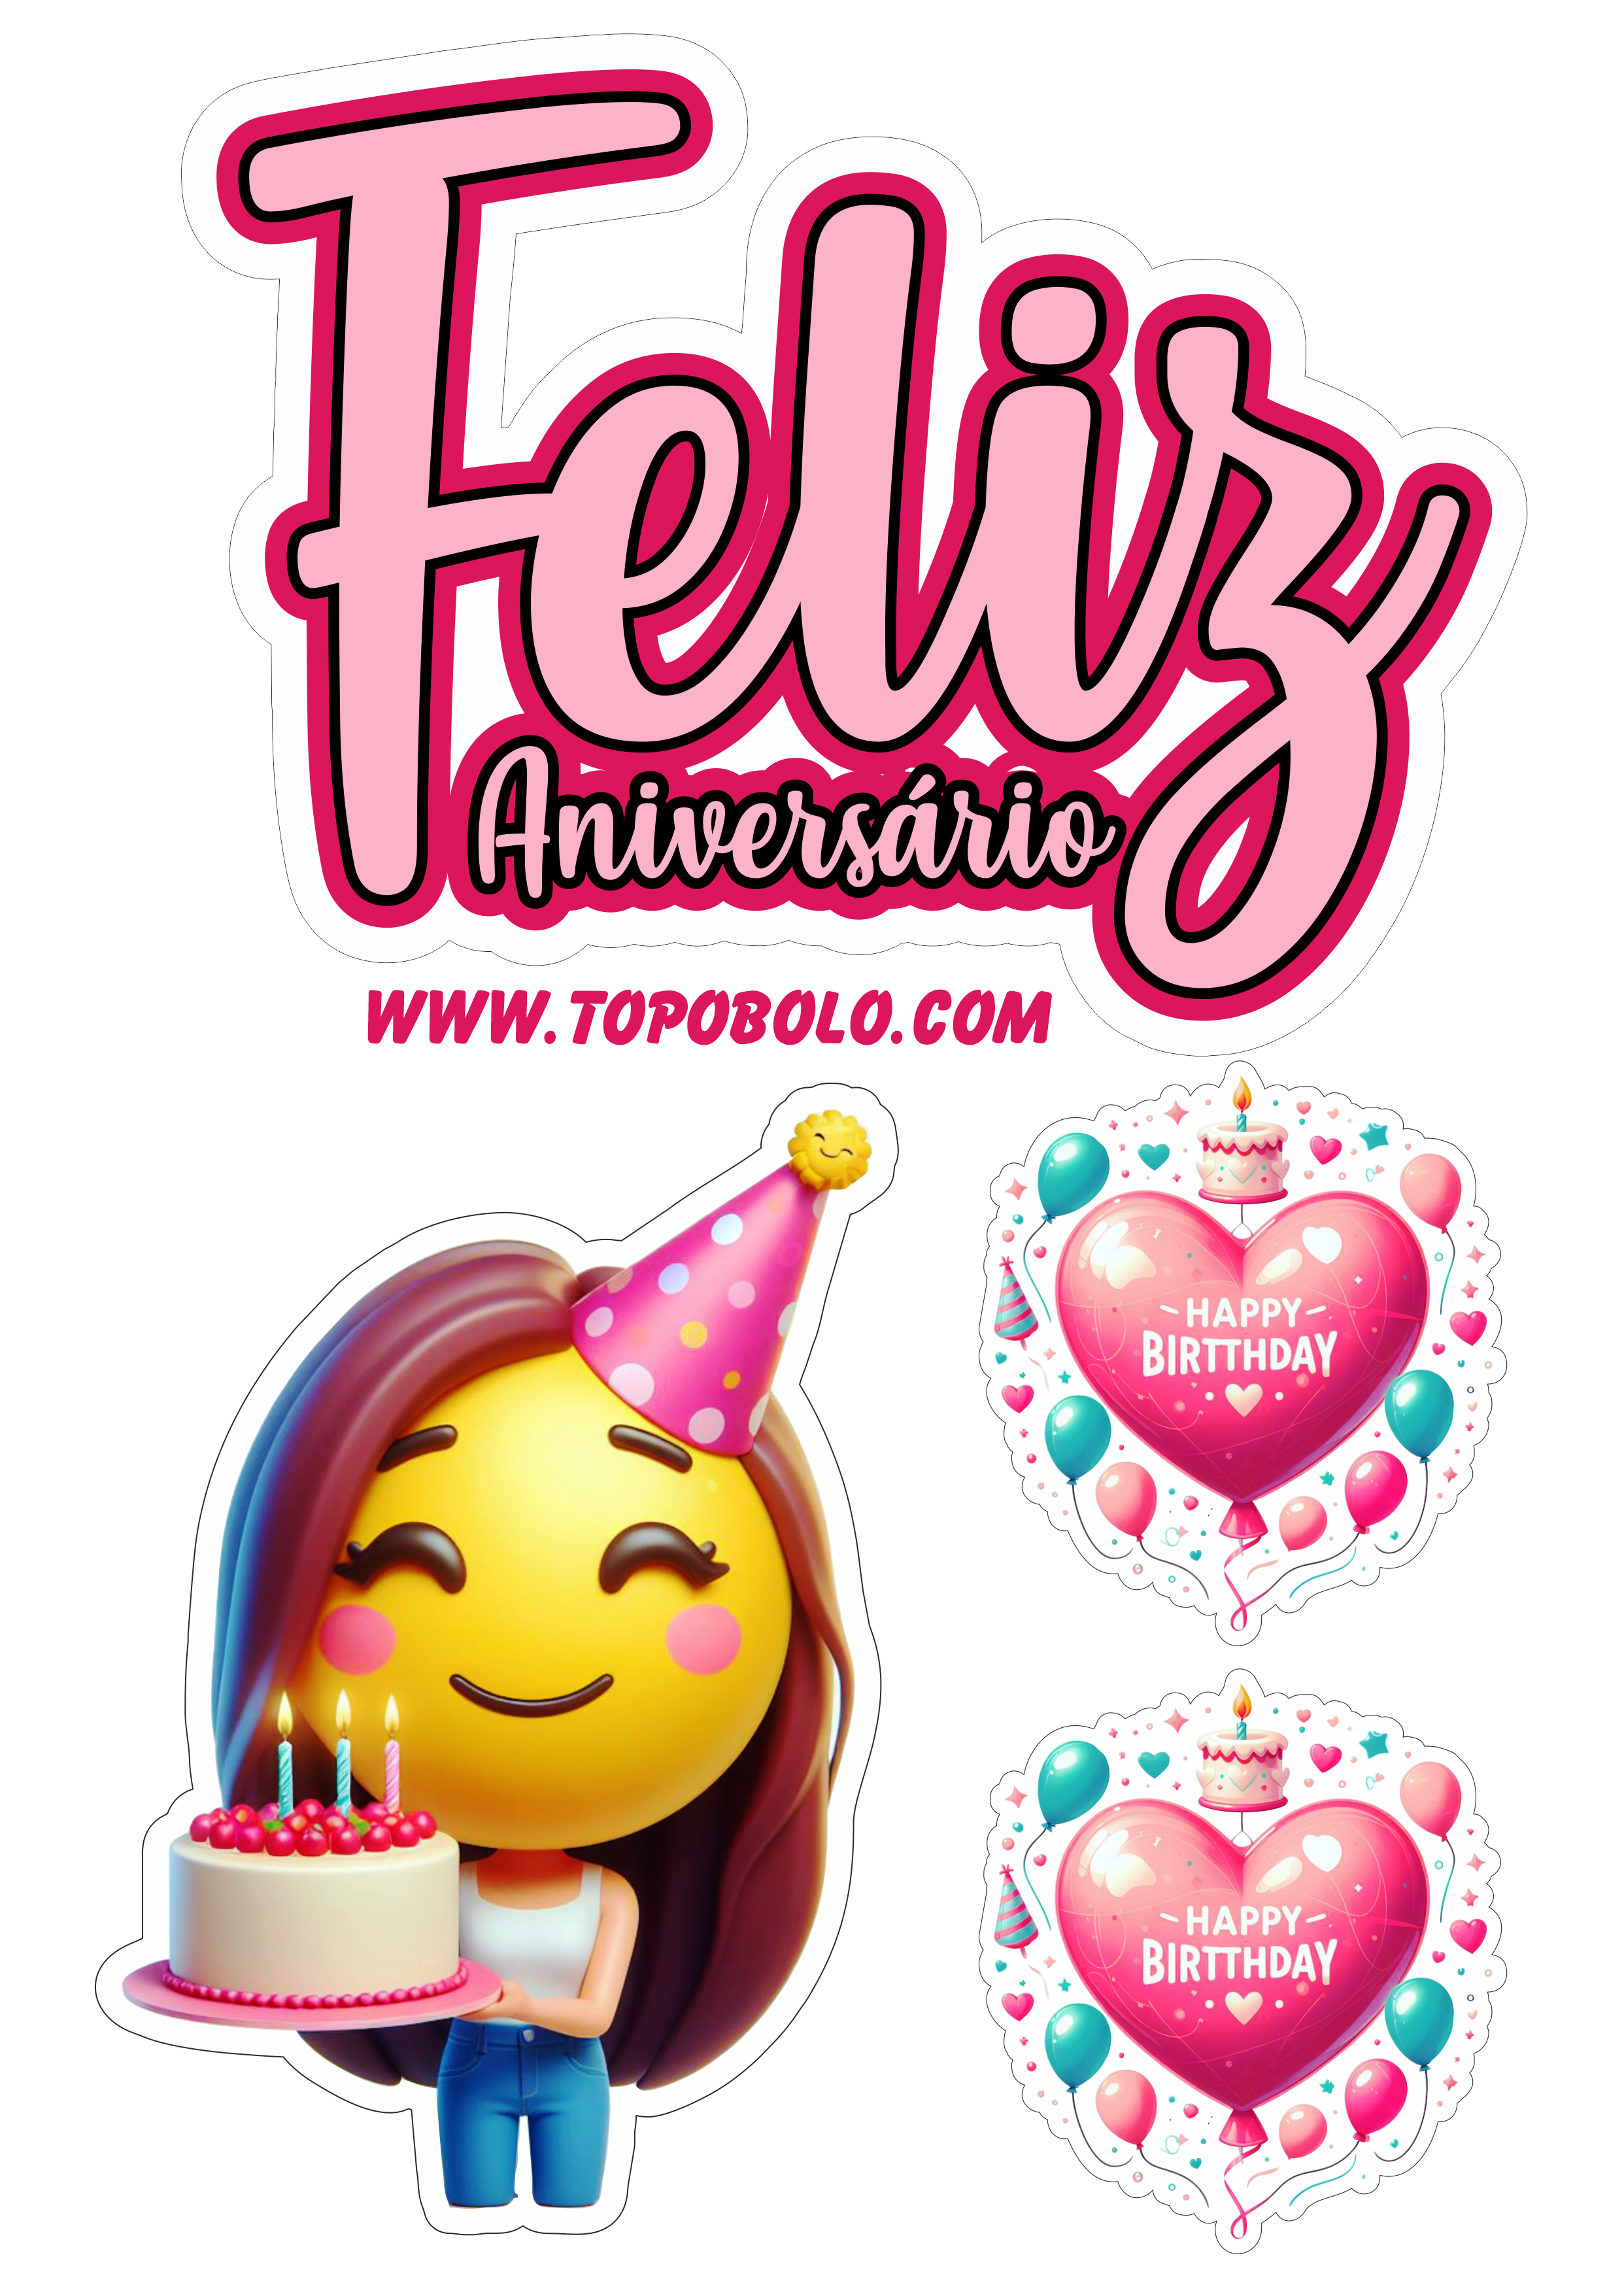 Topo de bolo feliz aniversário emojis engraçados festa pronta papelaria emoticon smiley grátis para imprimir png